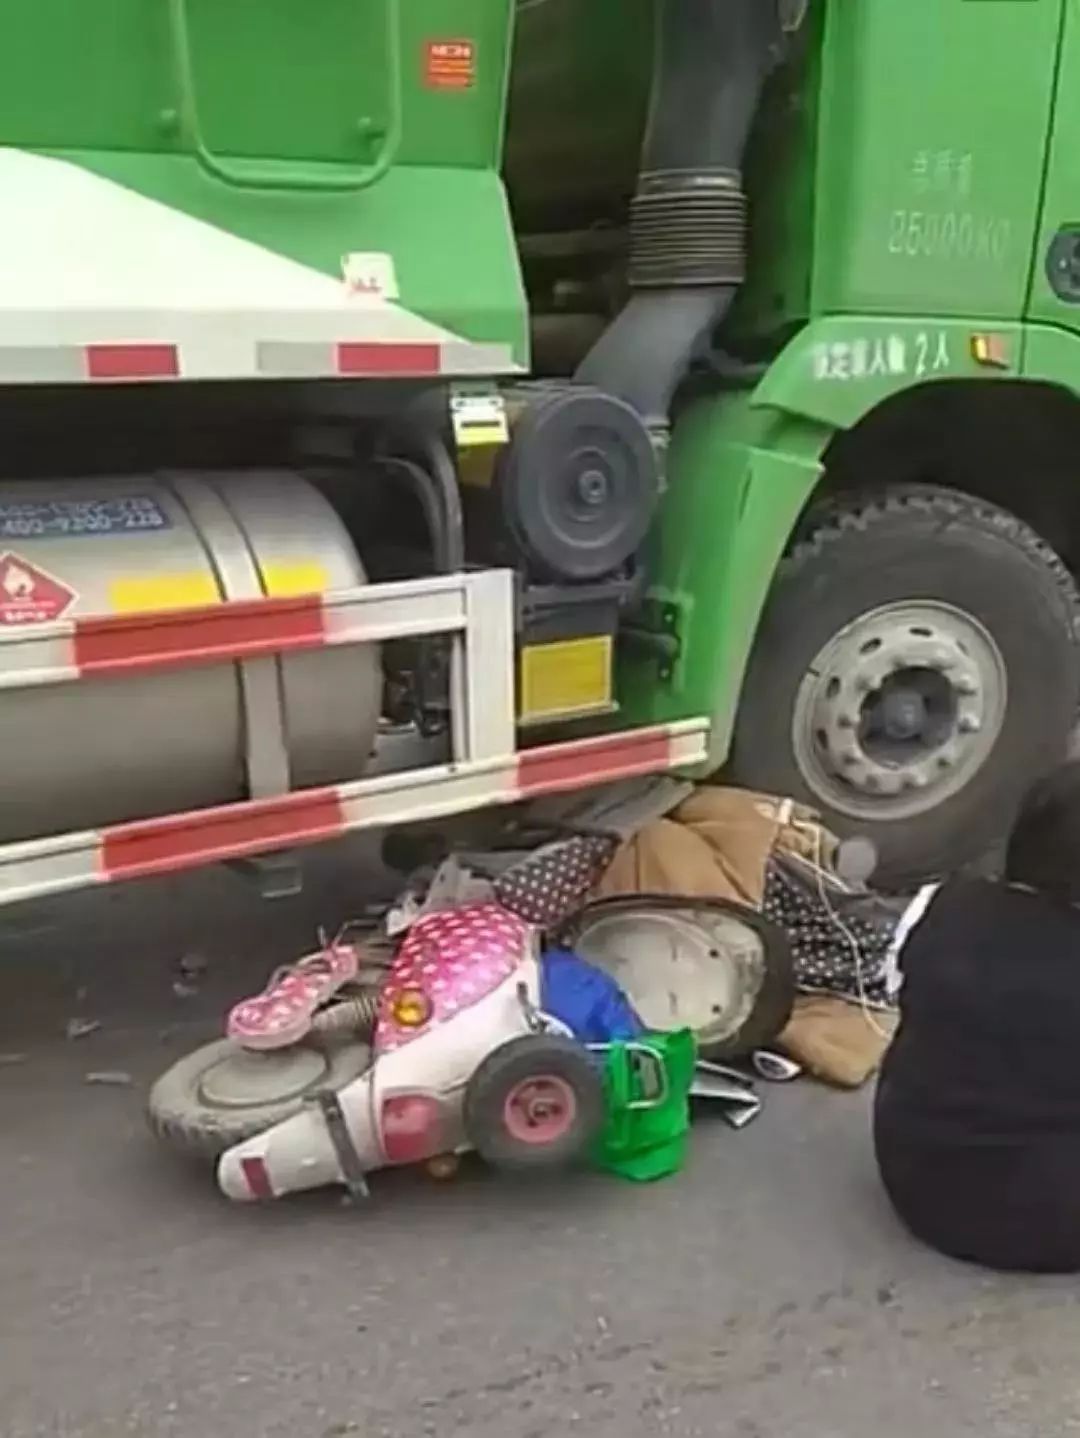 突发!八一桥红绿灯路口附近一骑车市民被渣土车碾压身亡-桂林生活网新闻中心